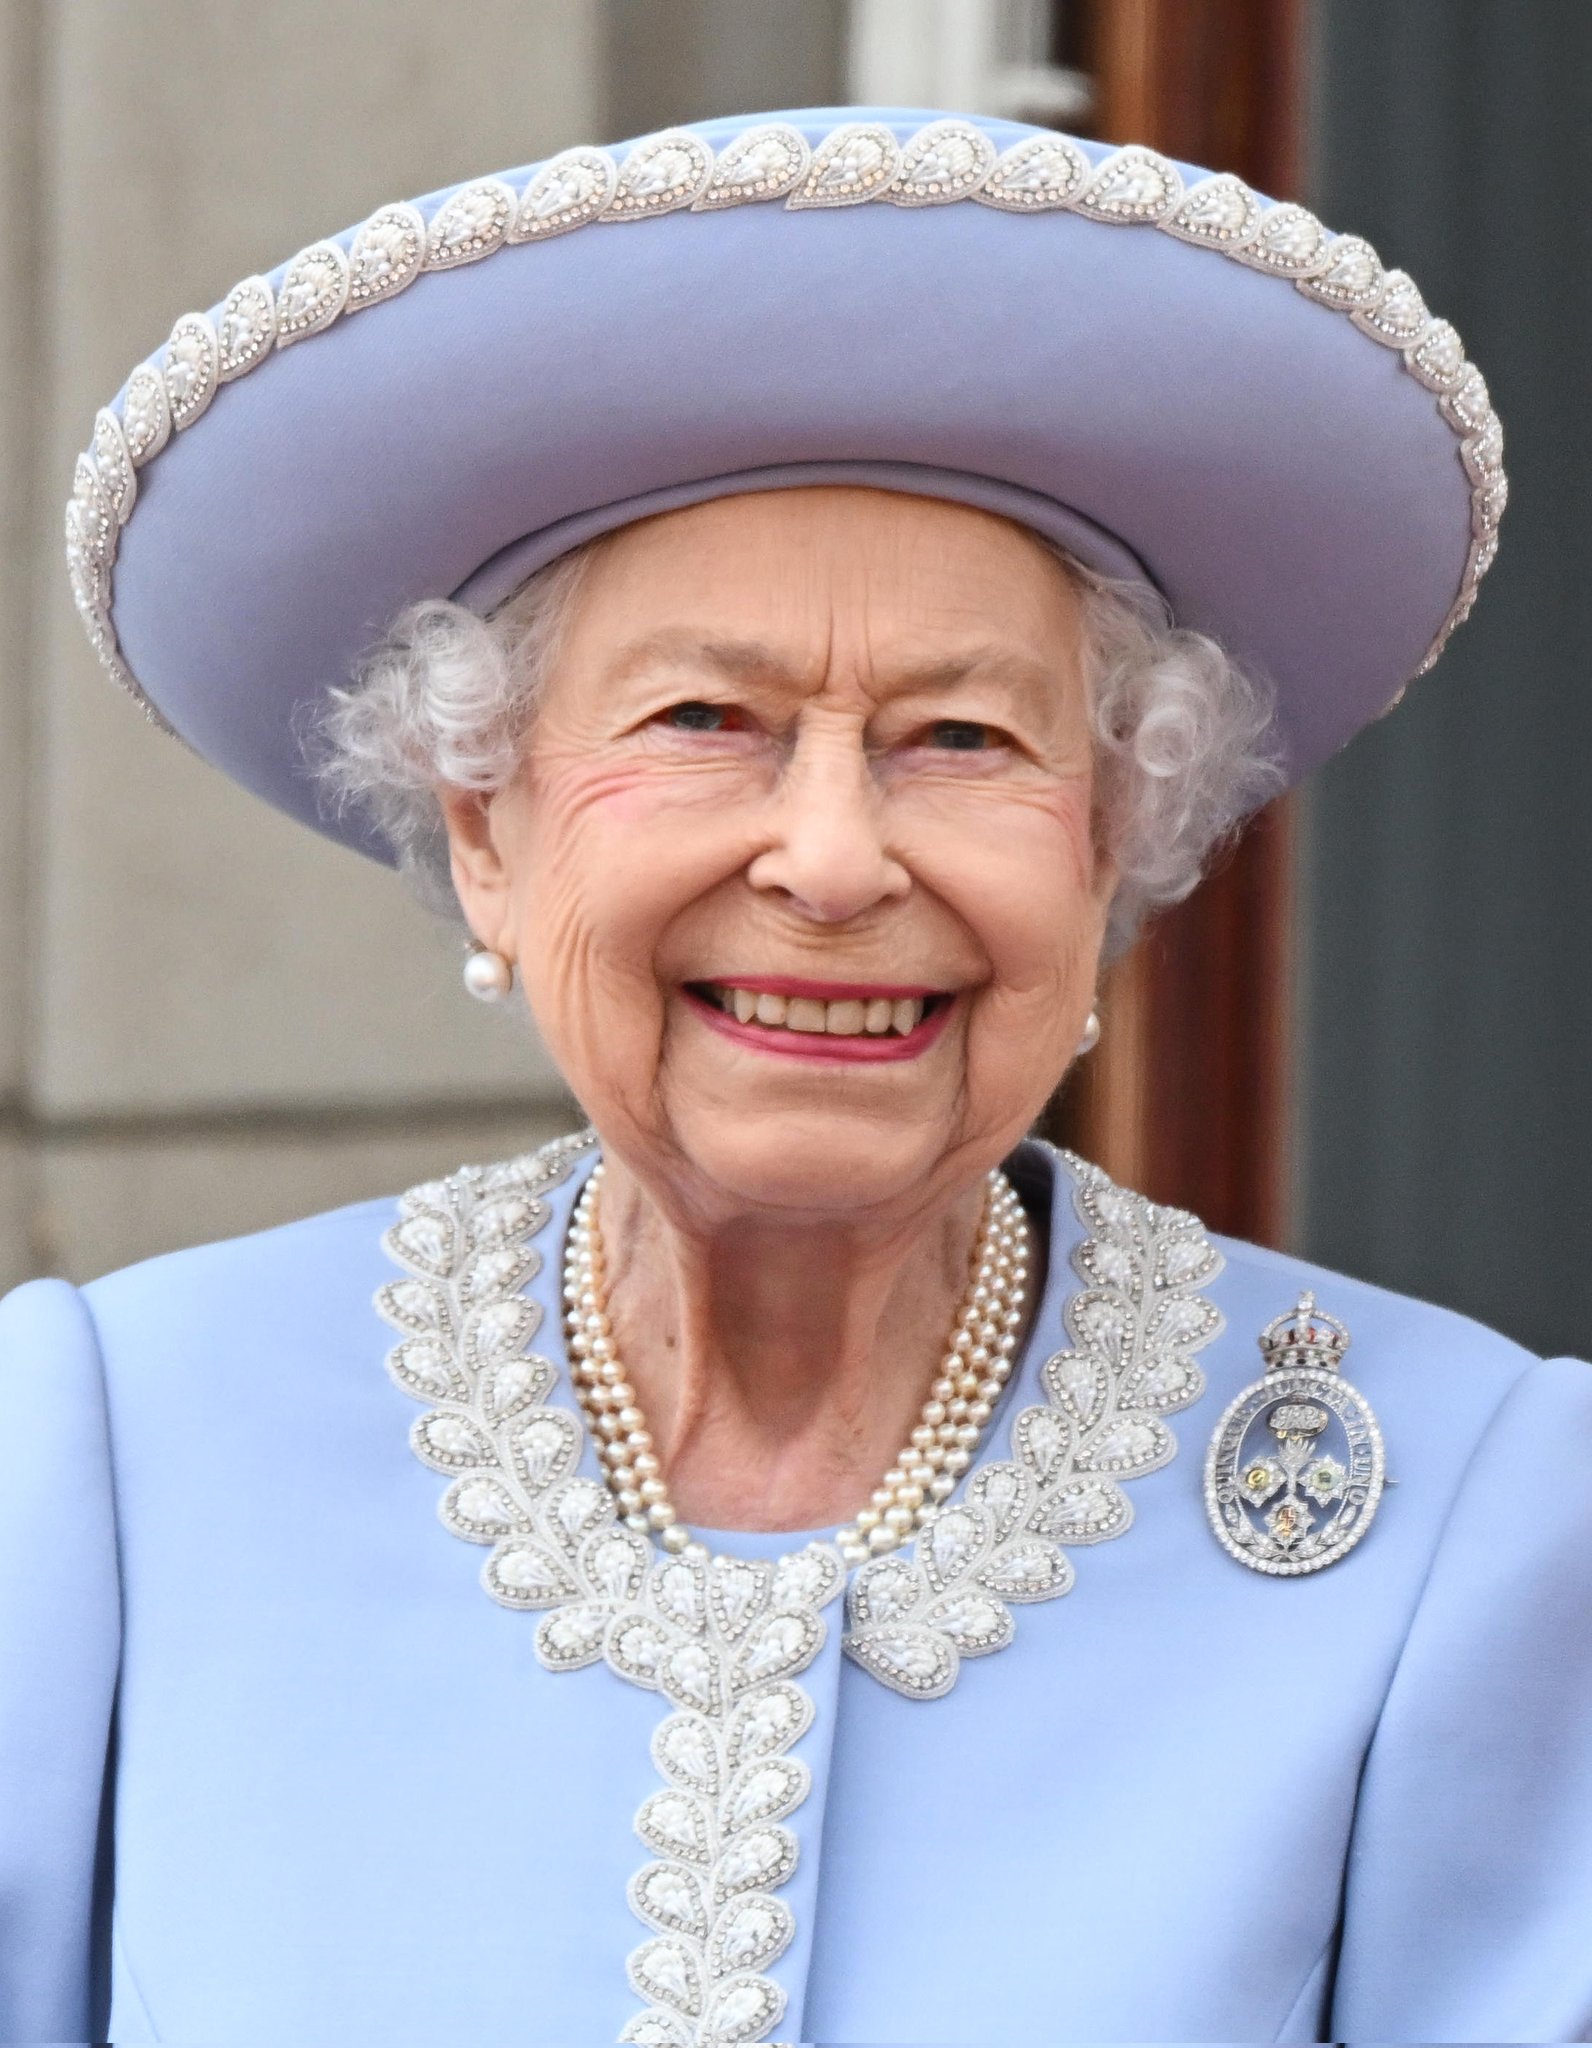 Дворец опубликовал новый портрет Елизаветы II в честь ее Платинового юбилея правления